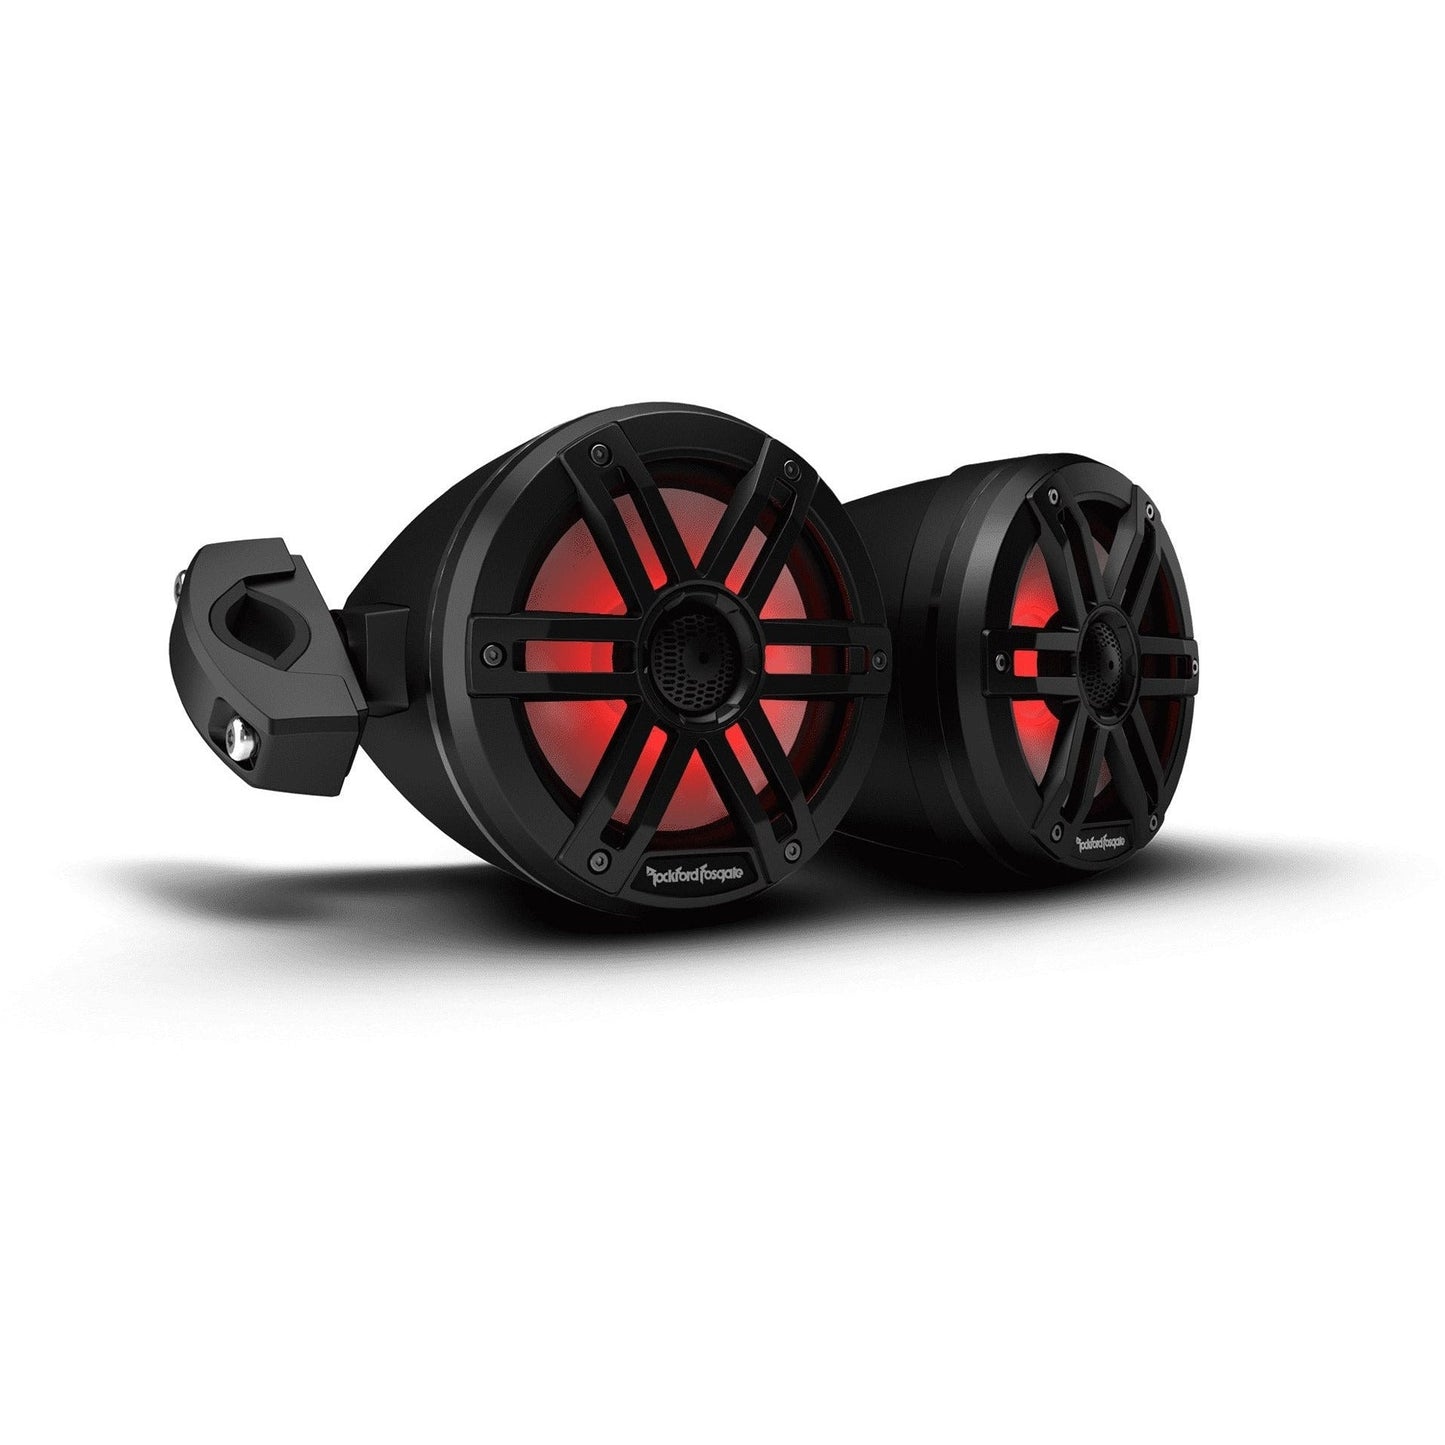 M1 6.5” Color Optix Moto-Can Speakers